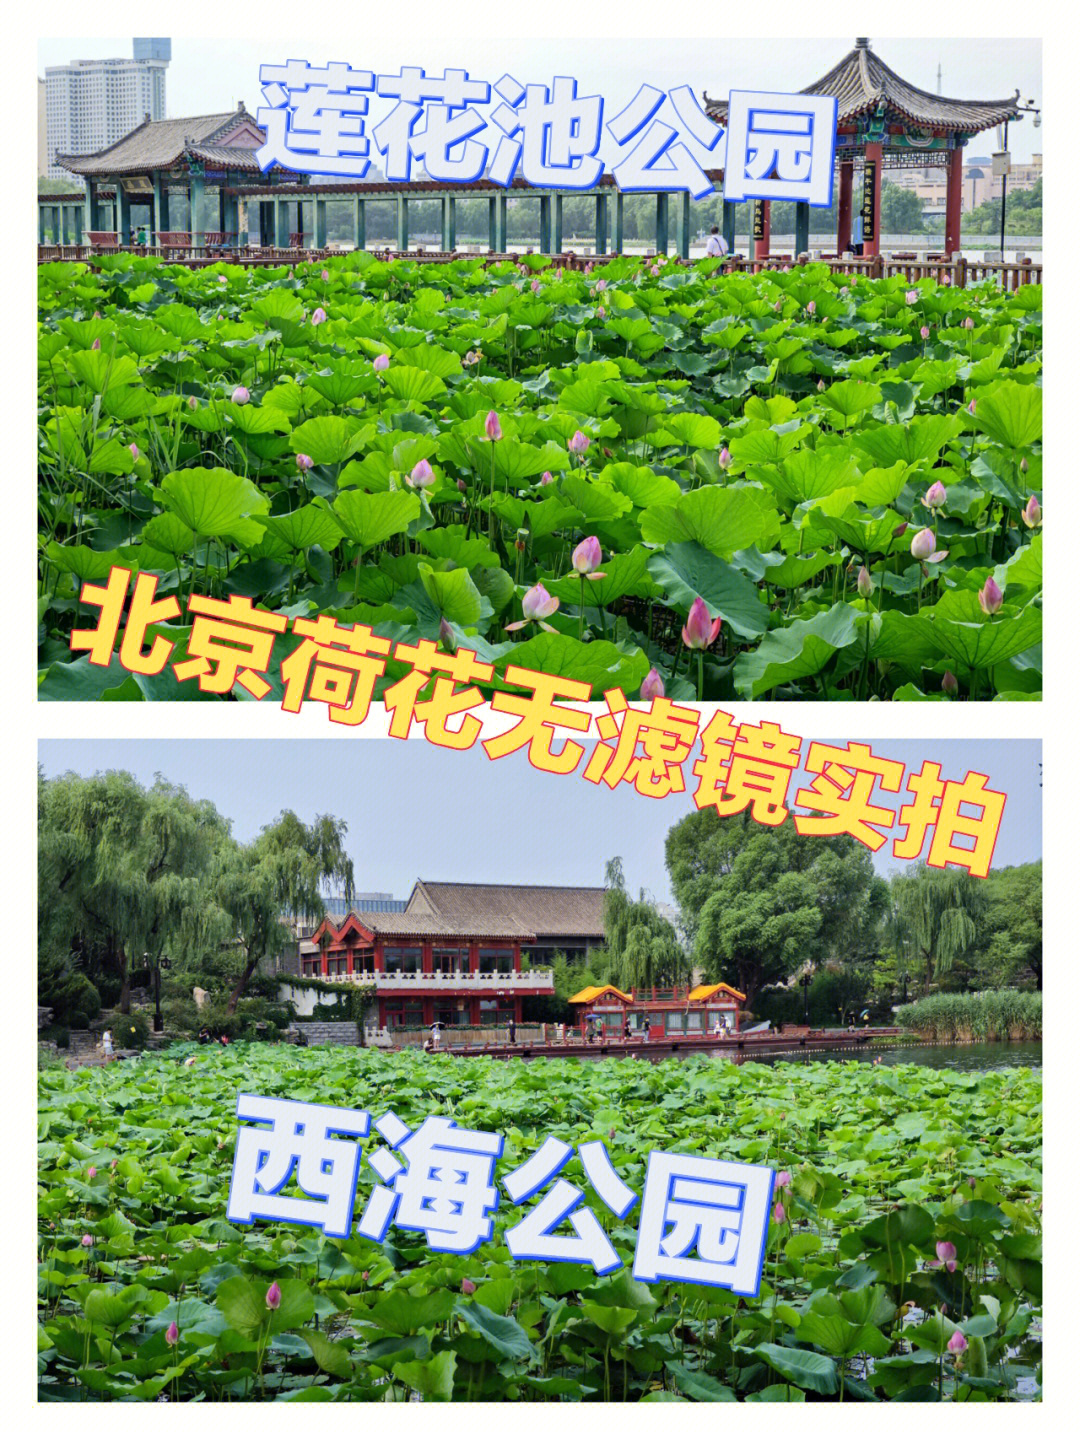 北京莲花池公园平面图图片